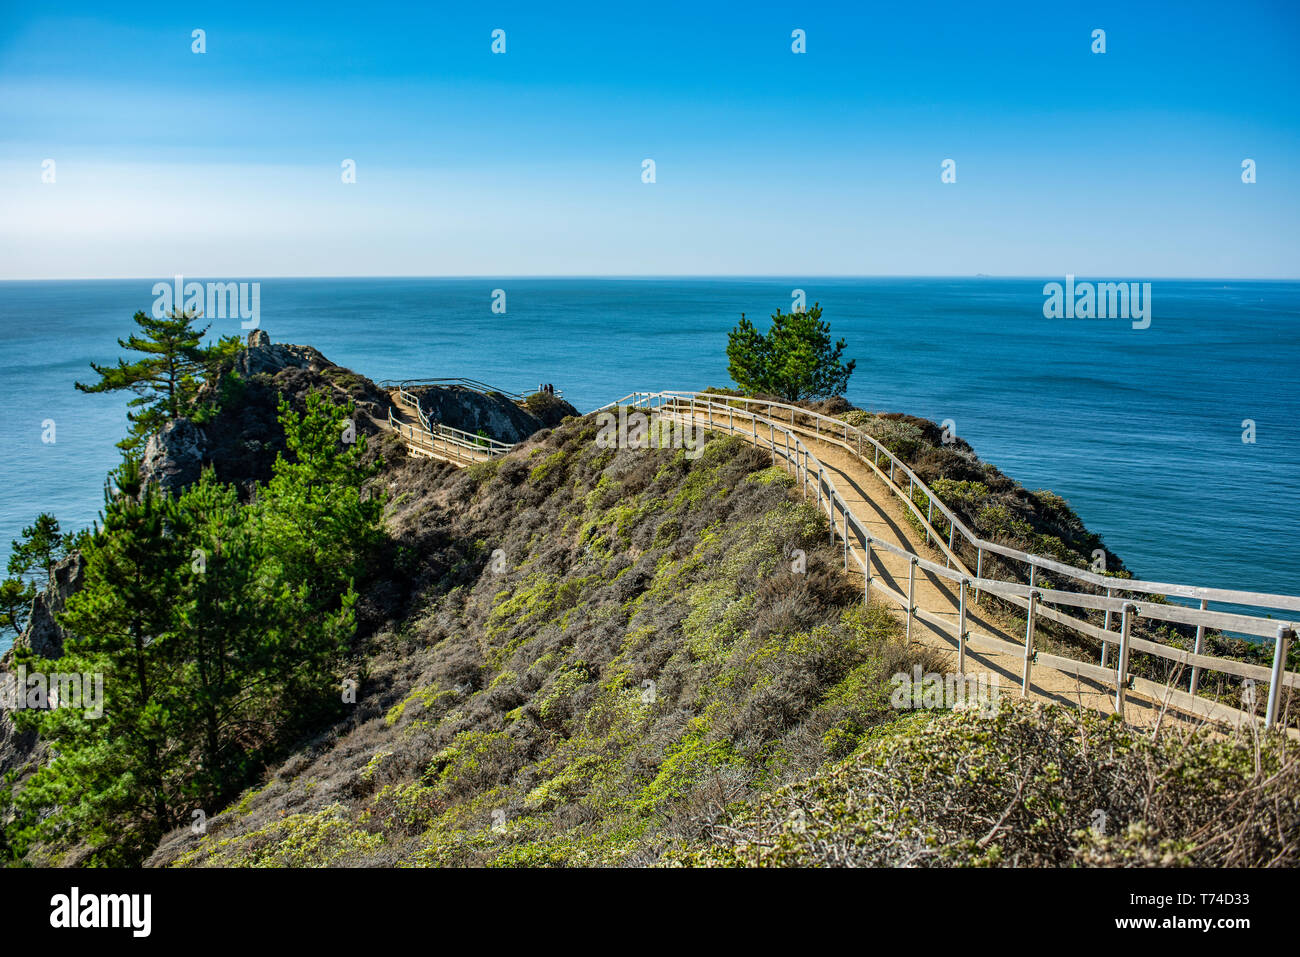 Die Promenade führt zu einem atemberaubenden Blick Muirs Strand im nördlichen Kalifornien; Stinson Beach, Kalifornien, Vereinigte Staaten von Amerika Stockfoto